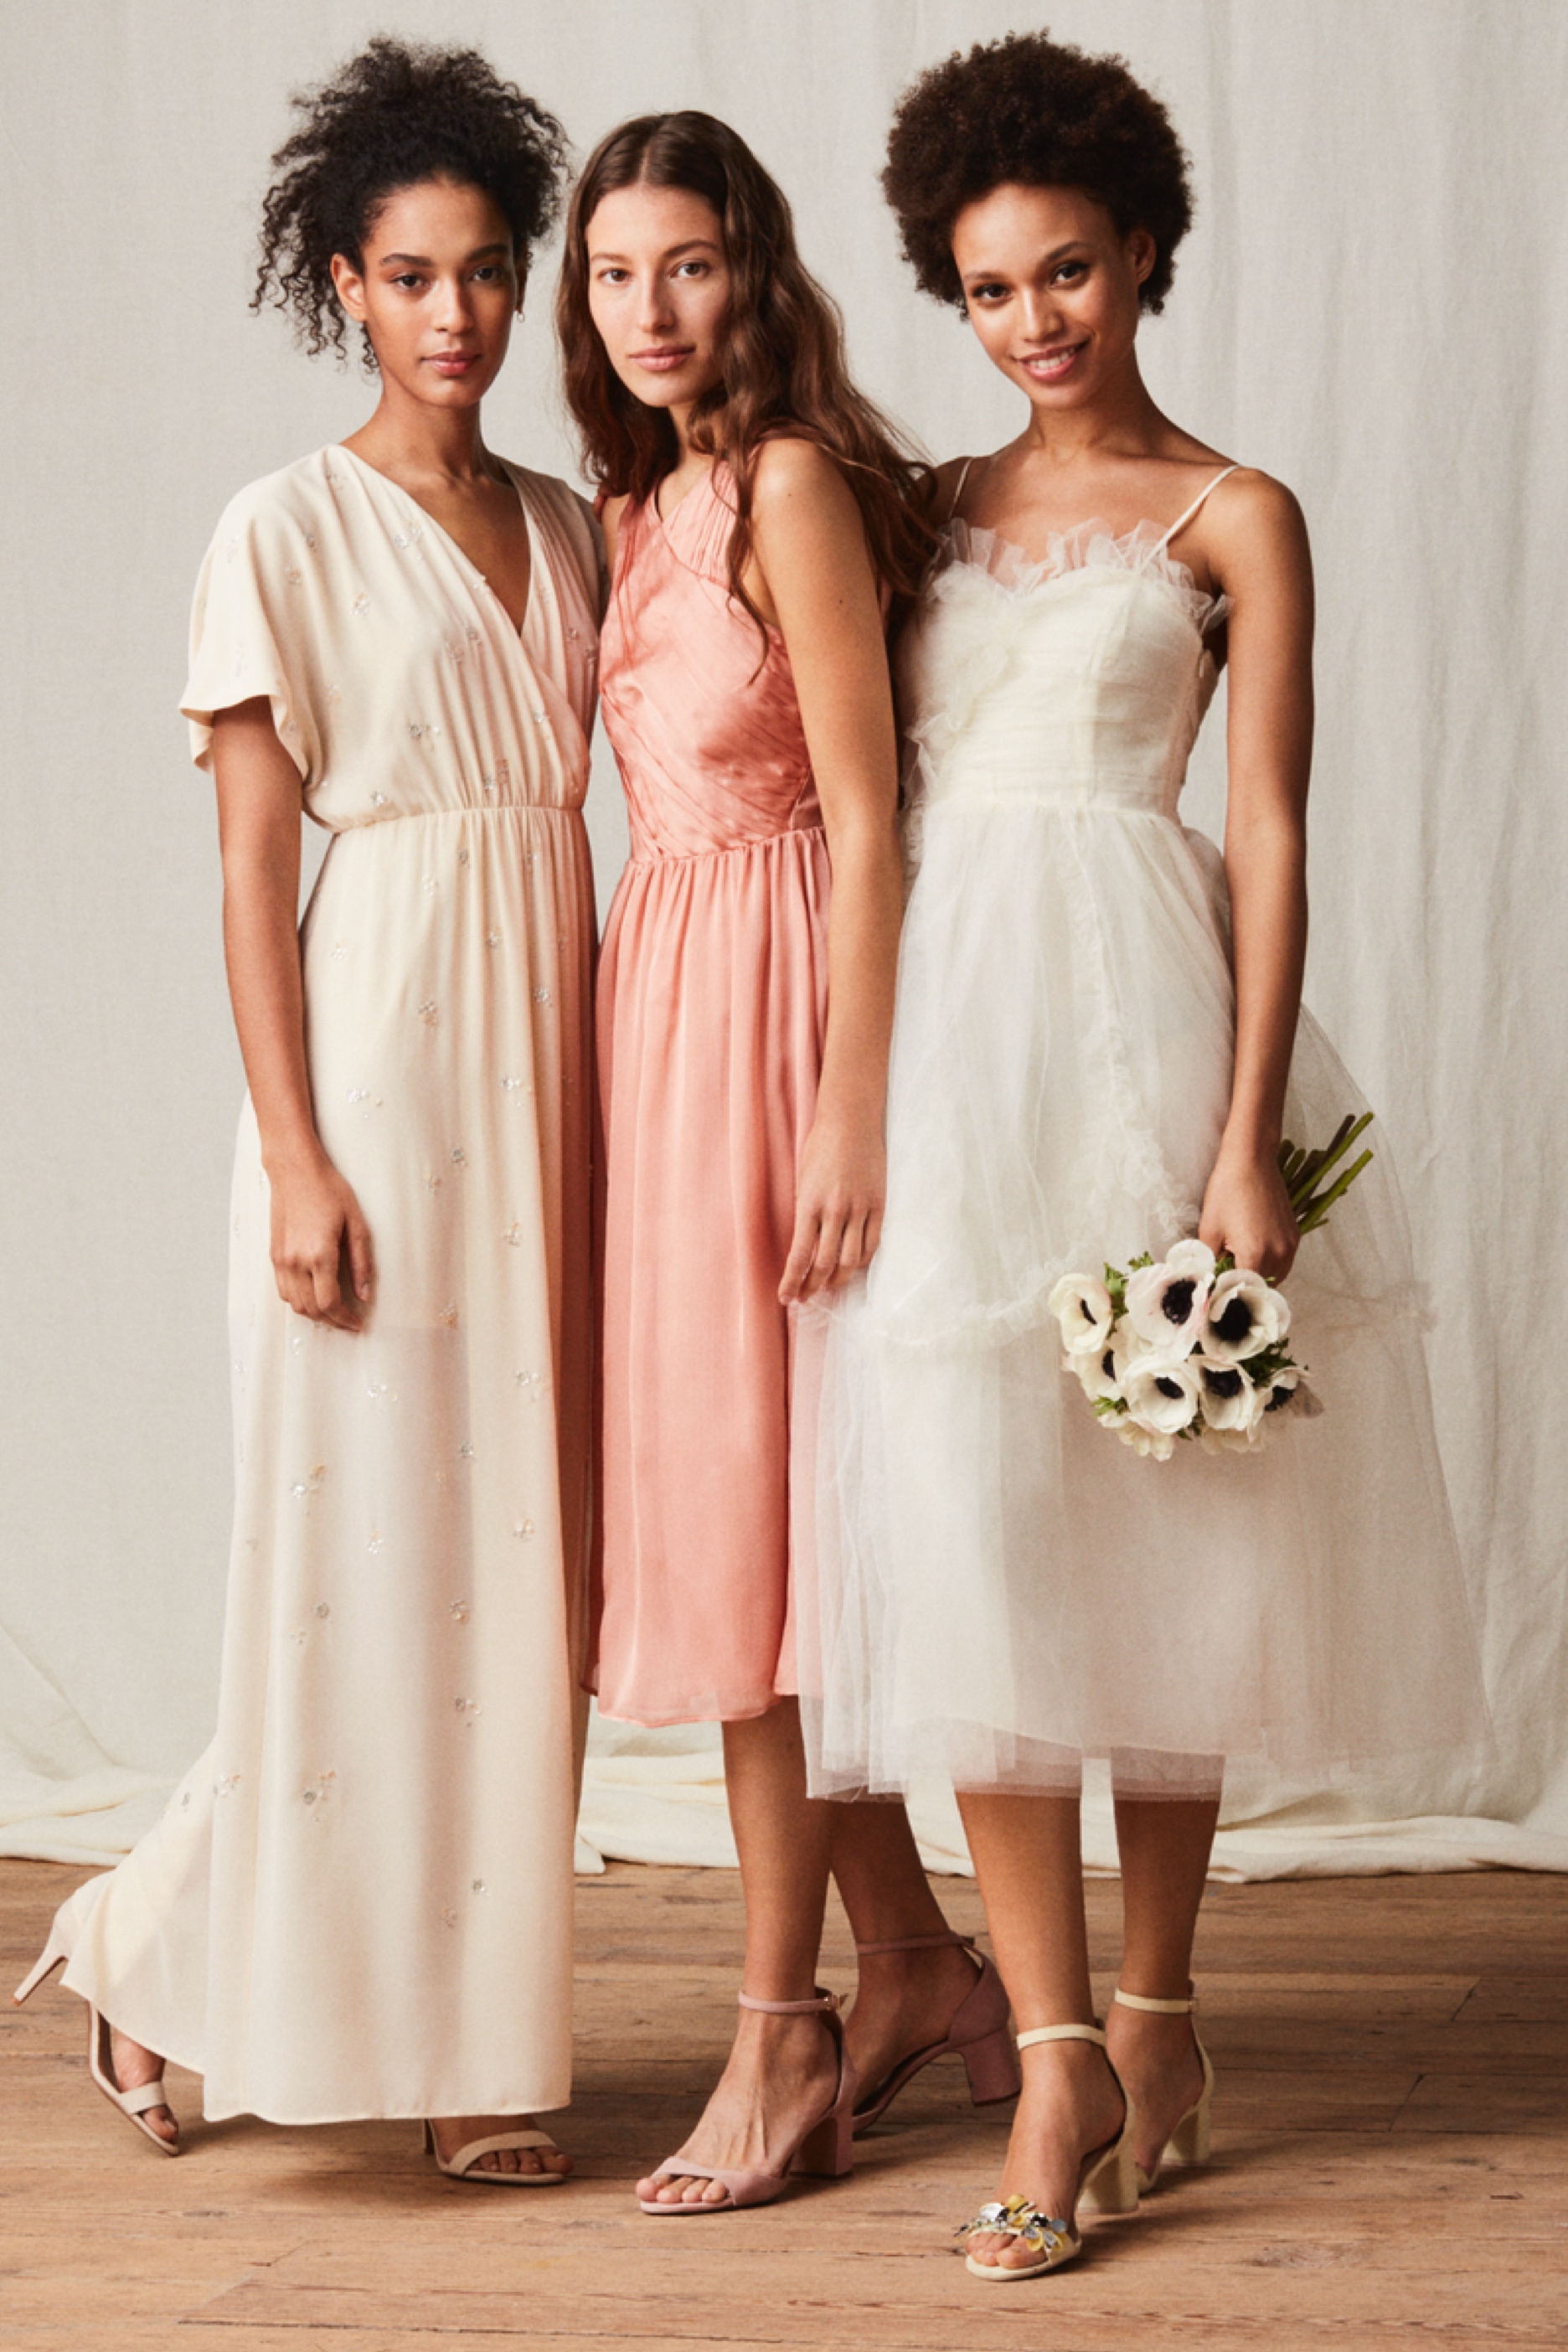 h&m bridesmaid dresses uk